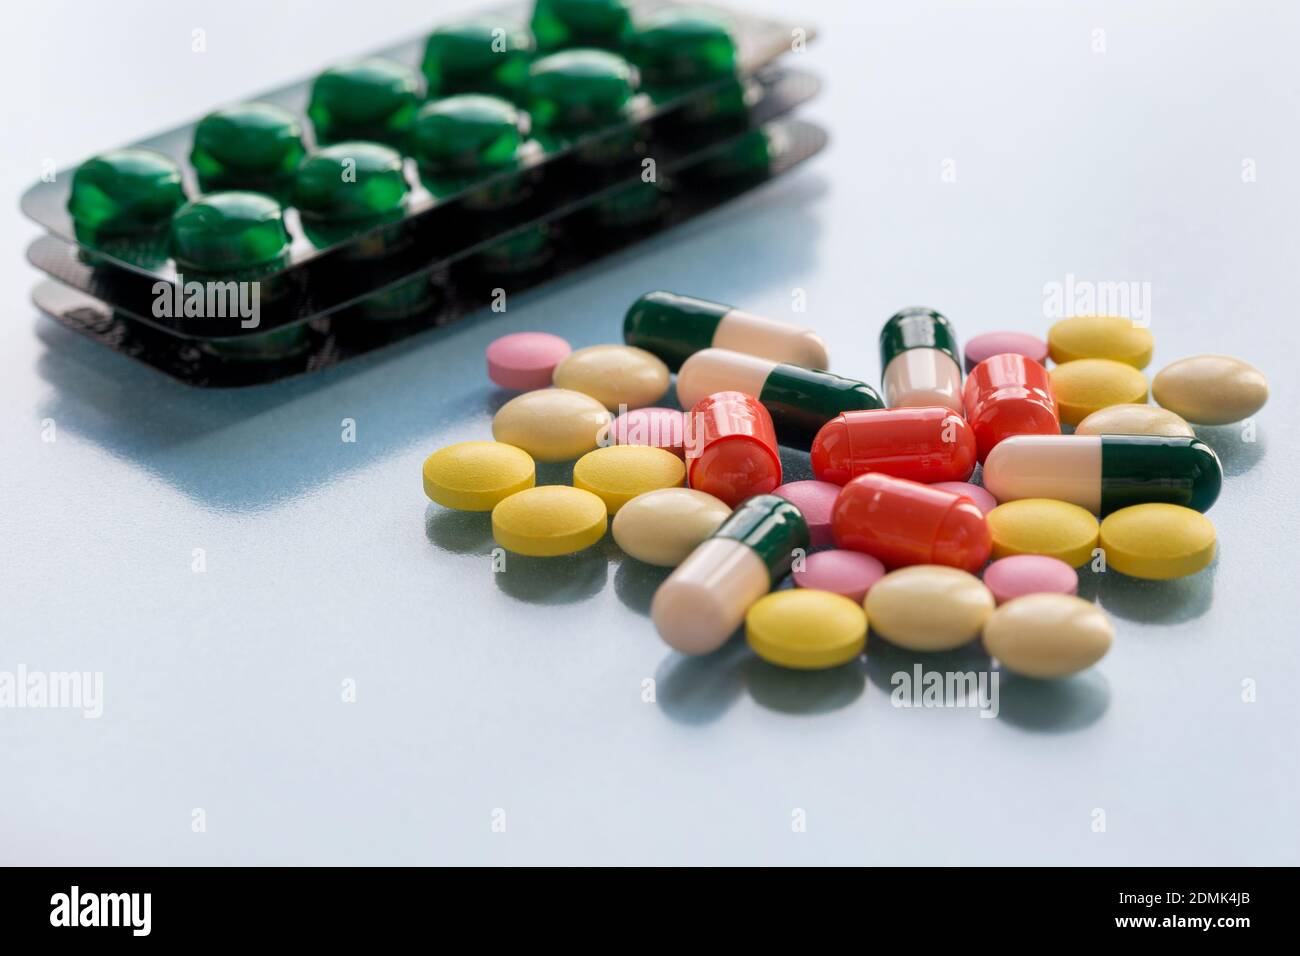 Confezioni con pillole, pillole colorate e capsule su sfondo blu. Concetto di salute medica o dipendenza da droghe. Foto Stock